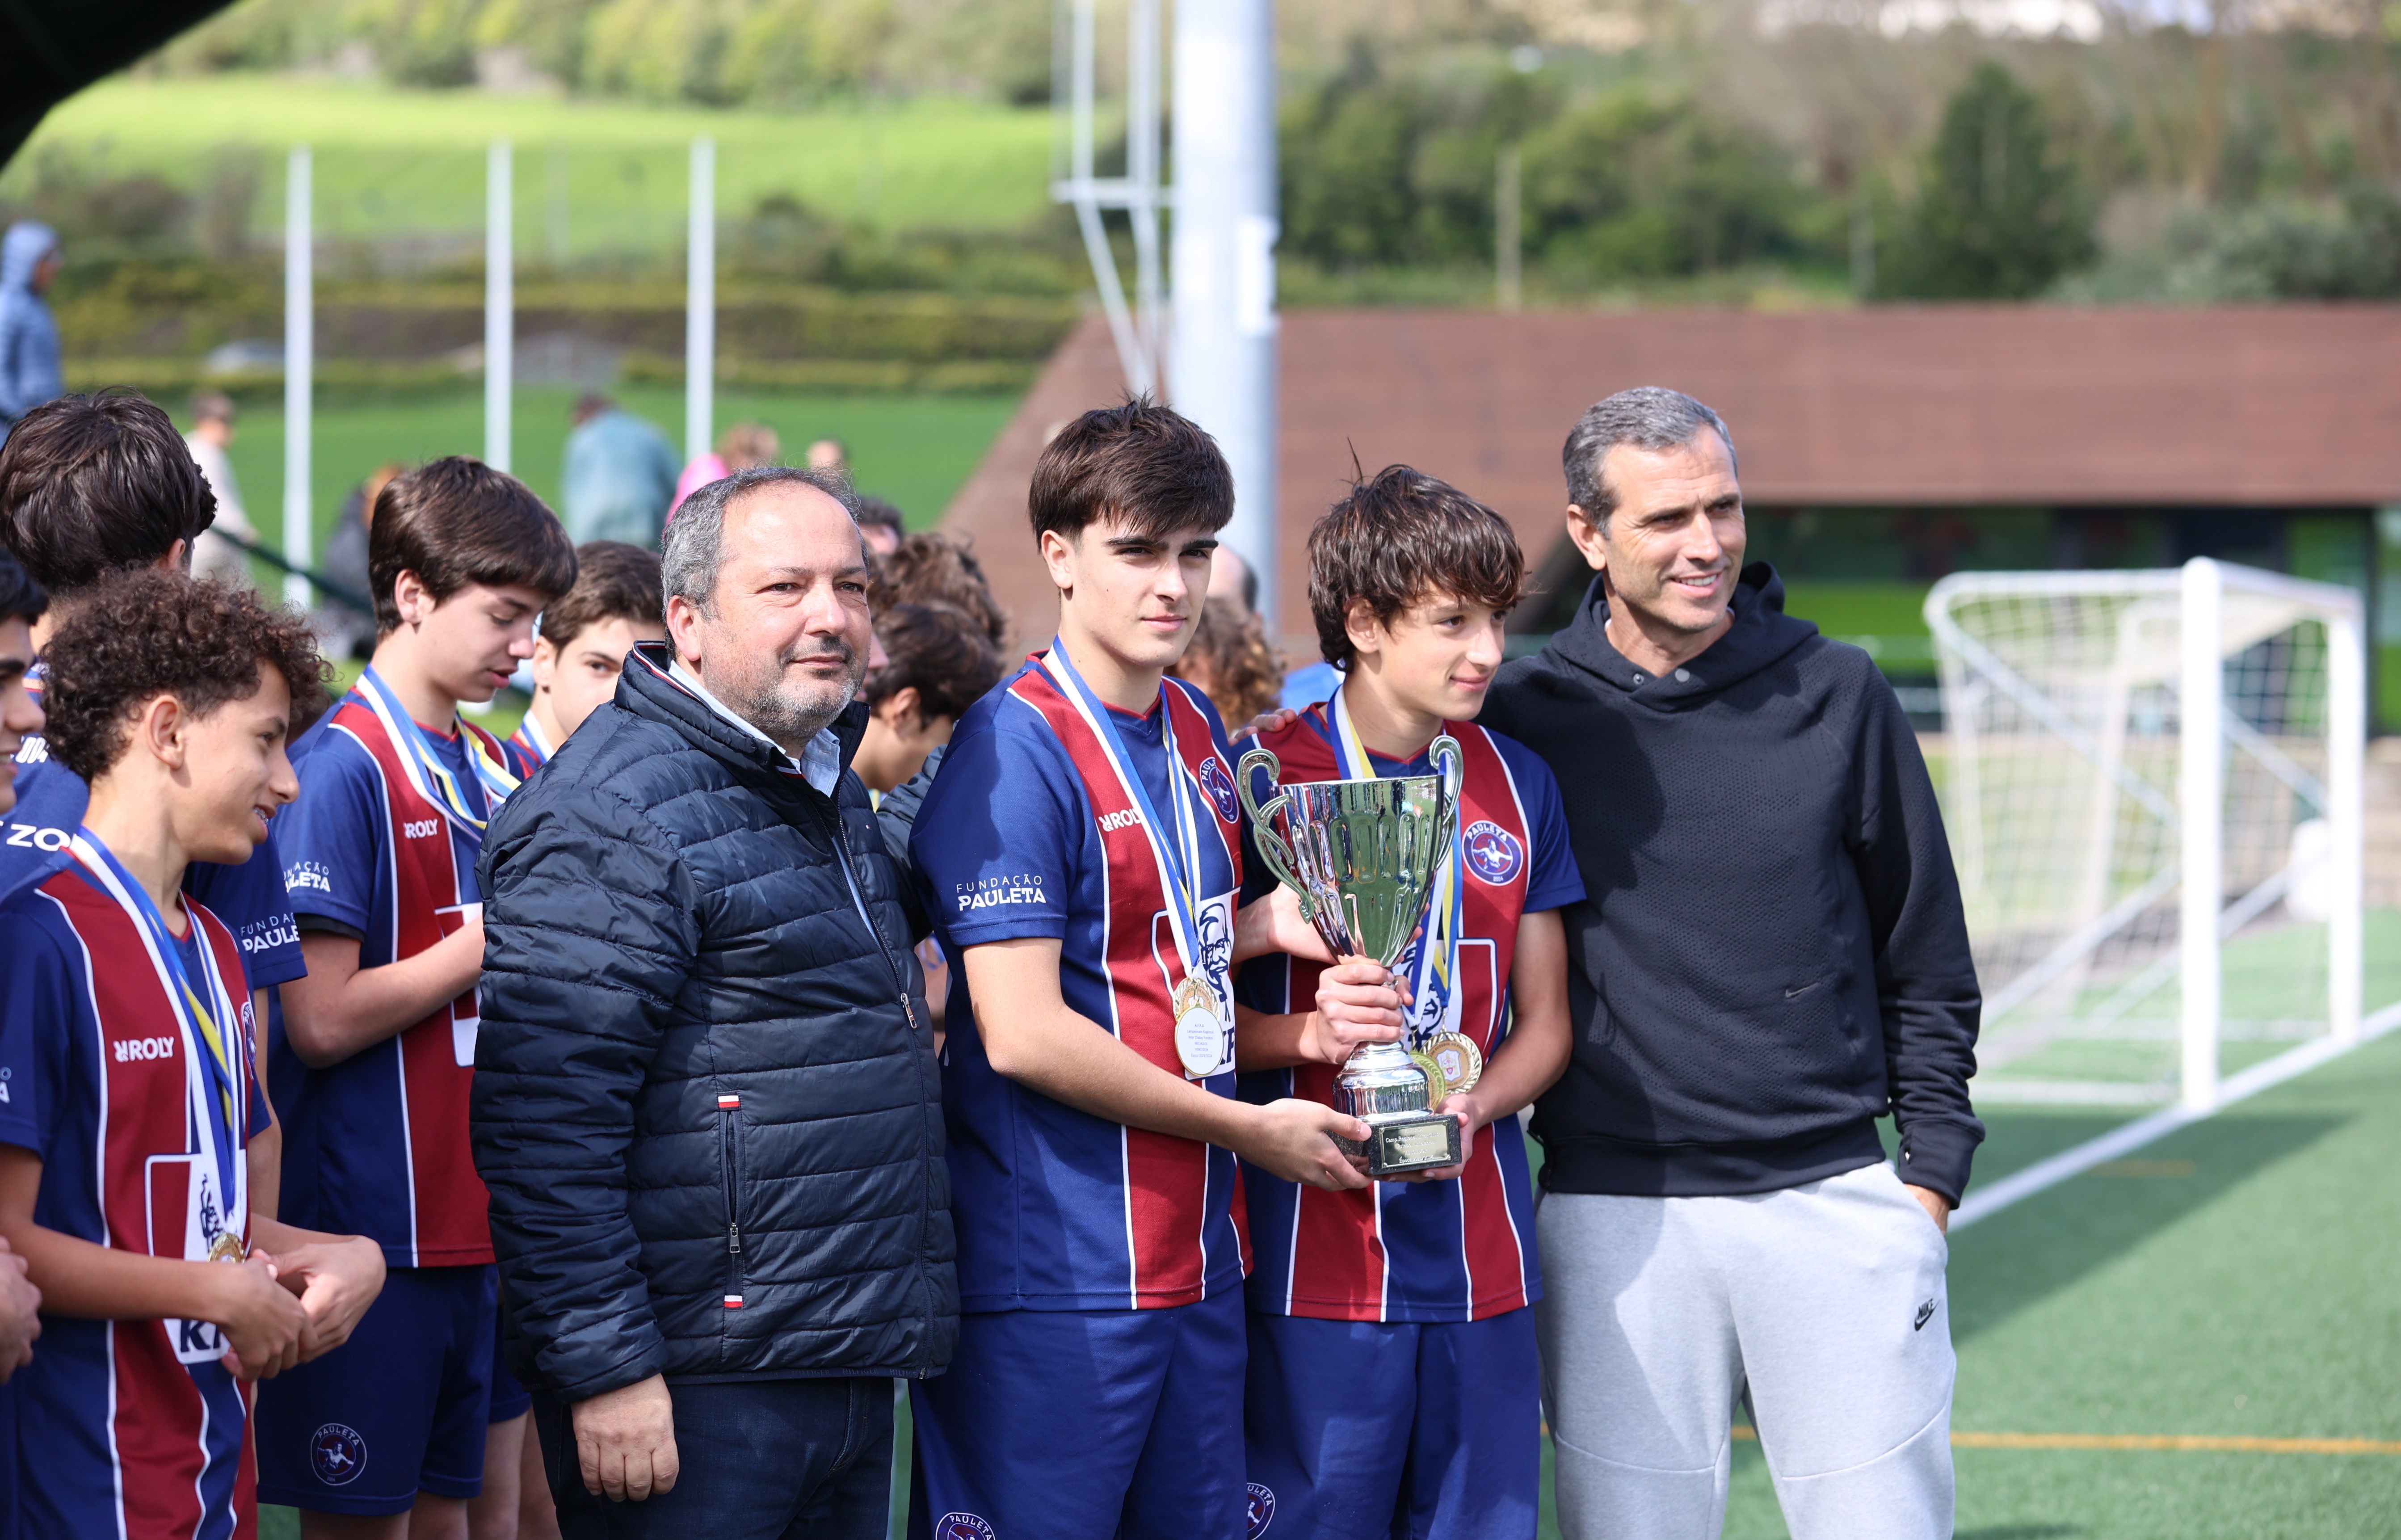 Entrega das Taças aos capitães da equipa, Filipe Cardoso e Lourenço Rodrigues